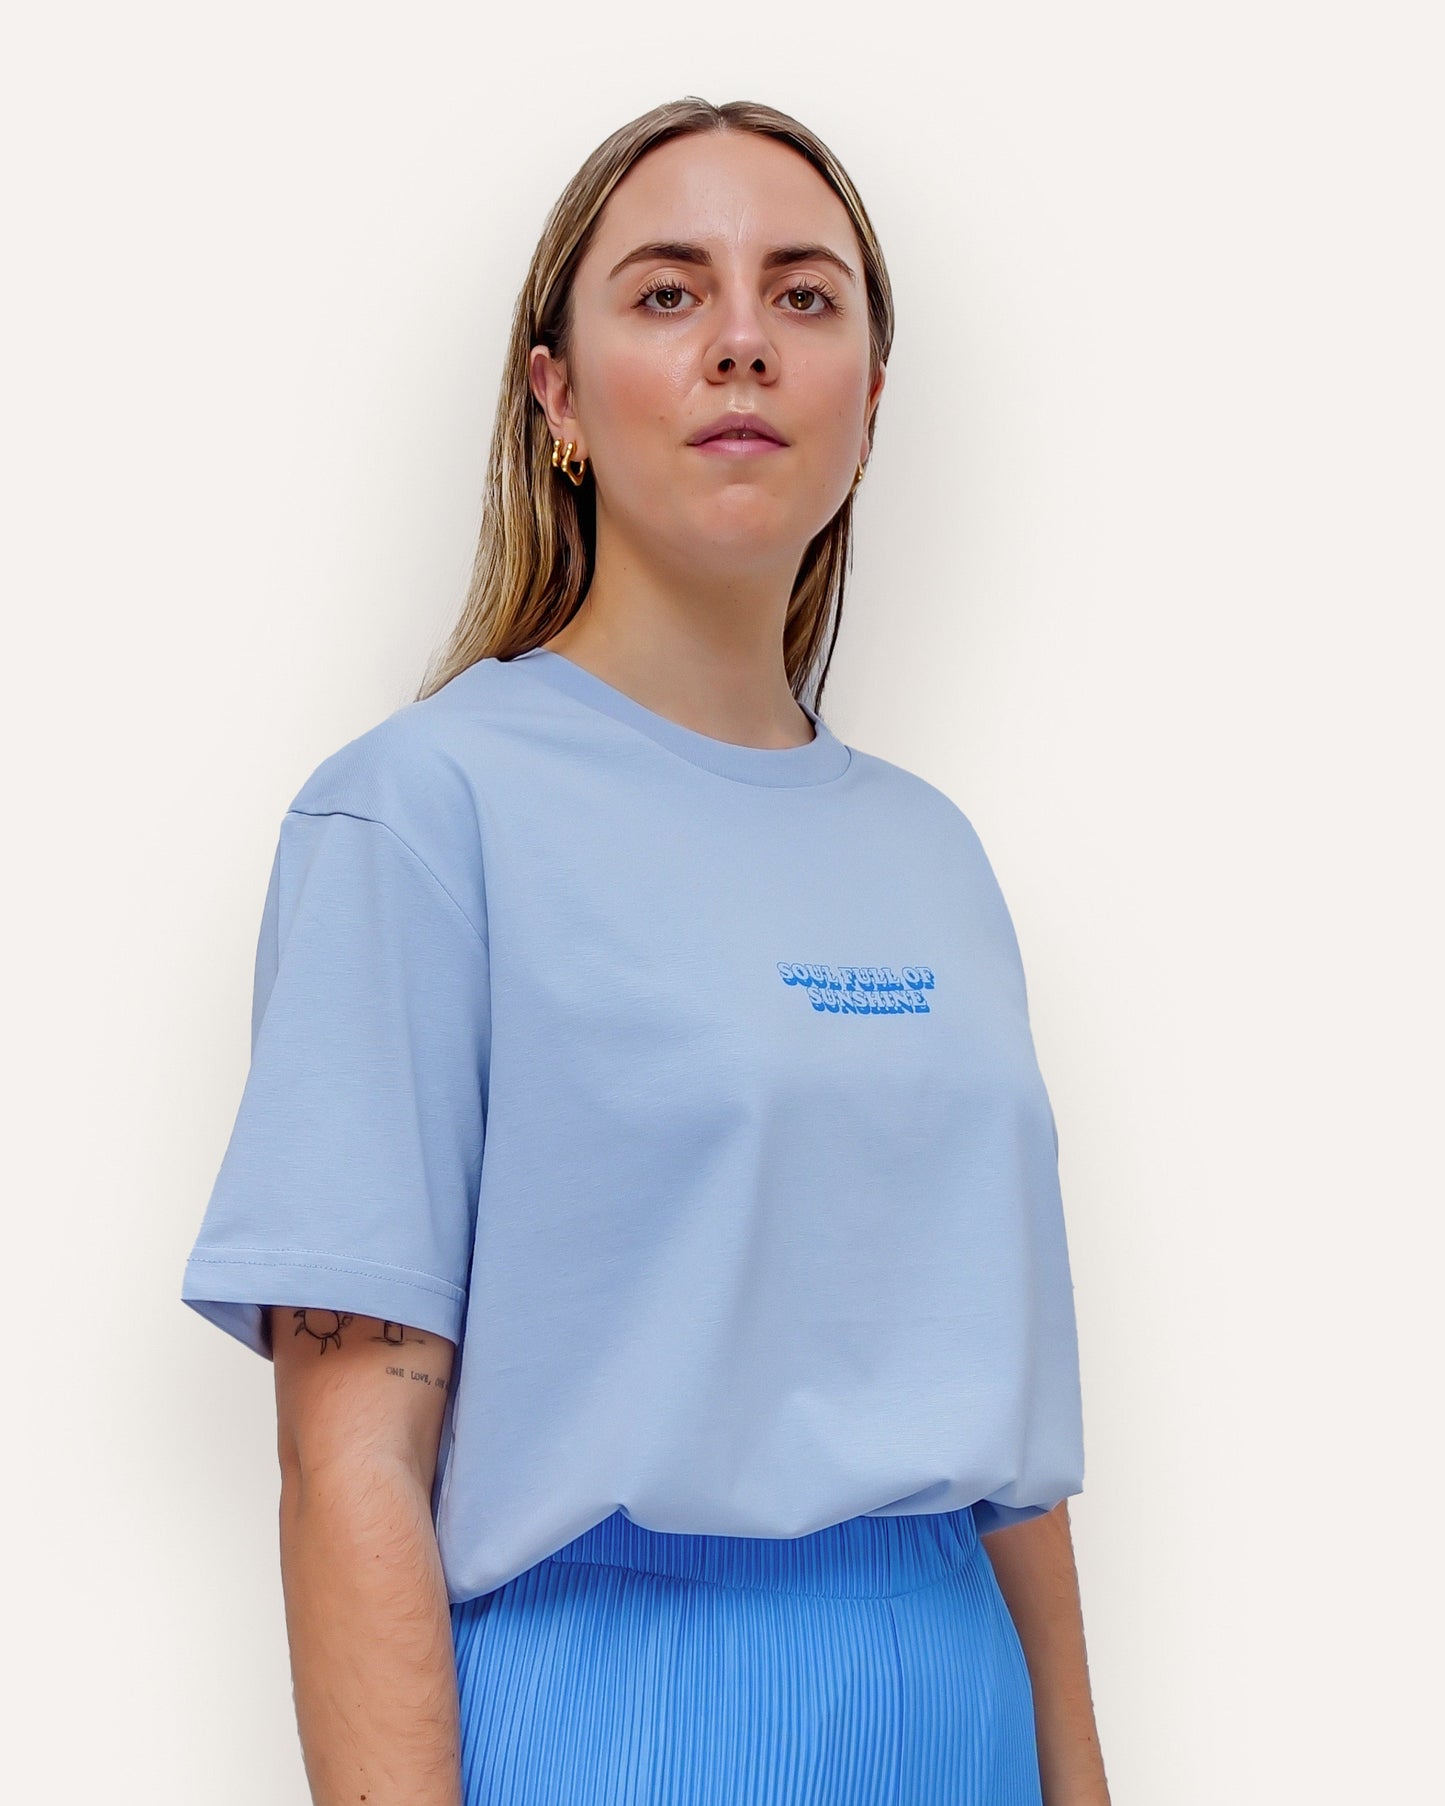 »SOUL FULL OF SHUNSHINE« Unisex Relaxed T-Shirt Blau